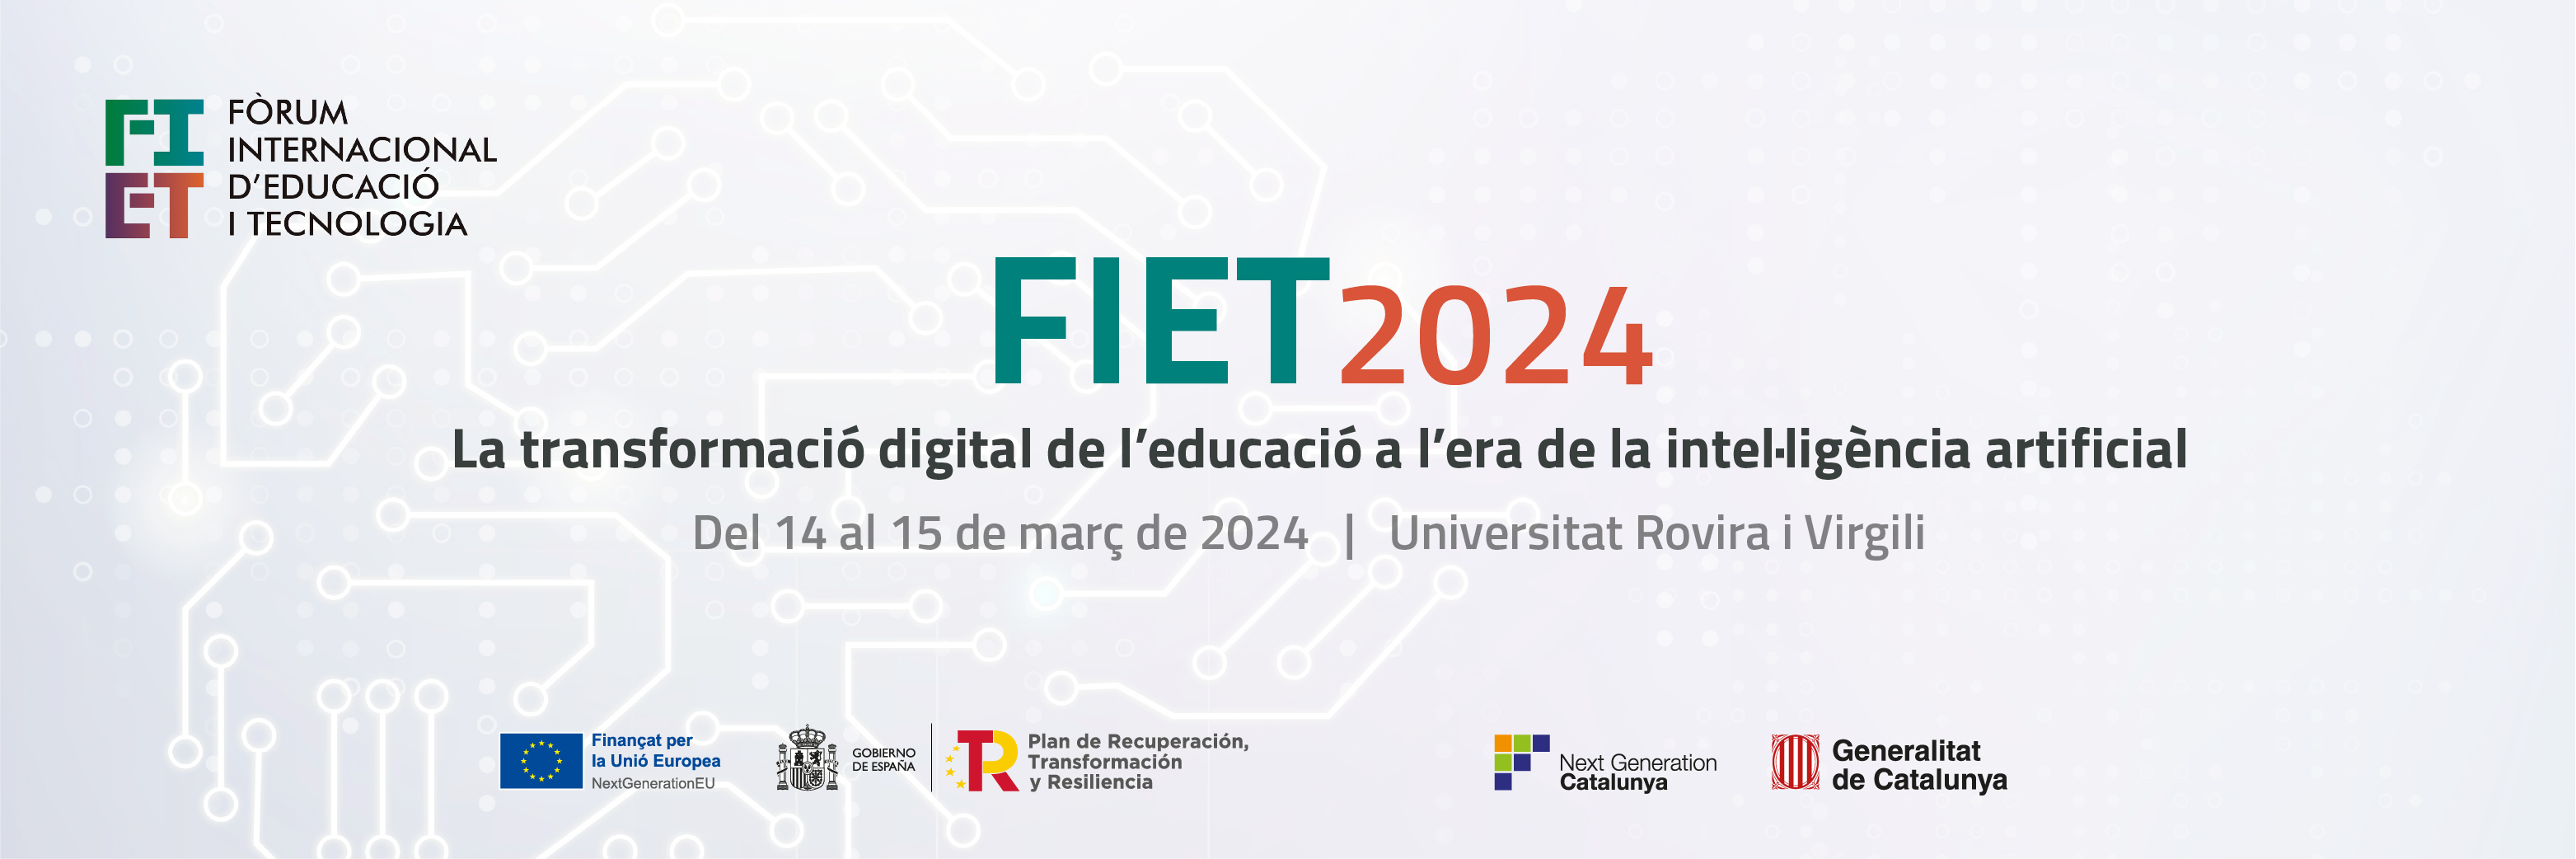 FIET 2024 – La transformació digital de l’educació a l’era de la intel·ligència artificial 